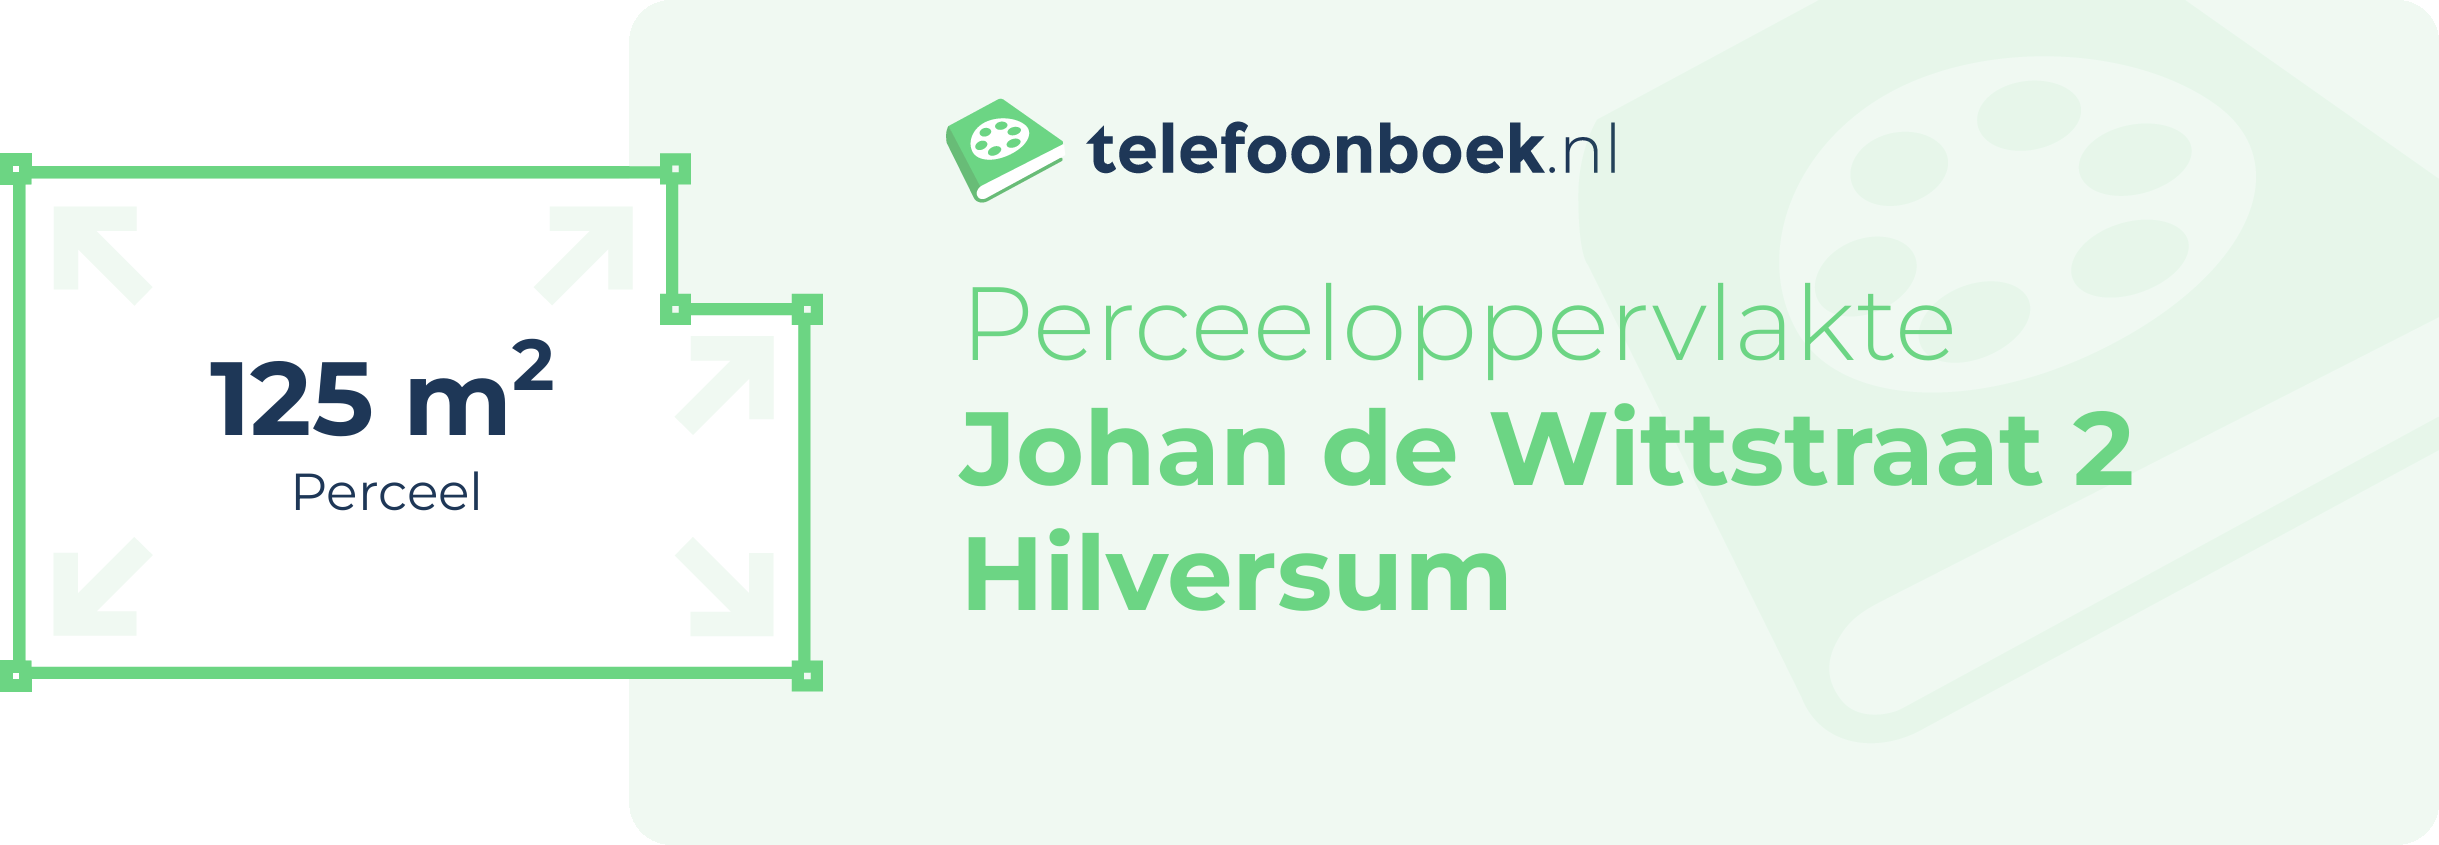 Perceeloppervlakte Johan De Wittstraat 2 Hilversum